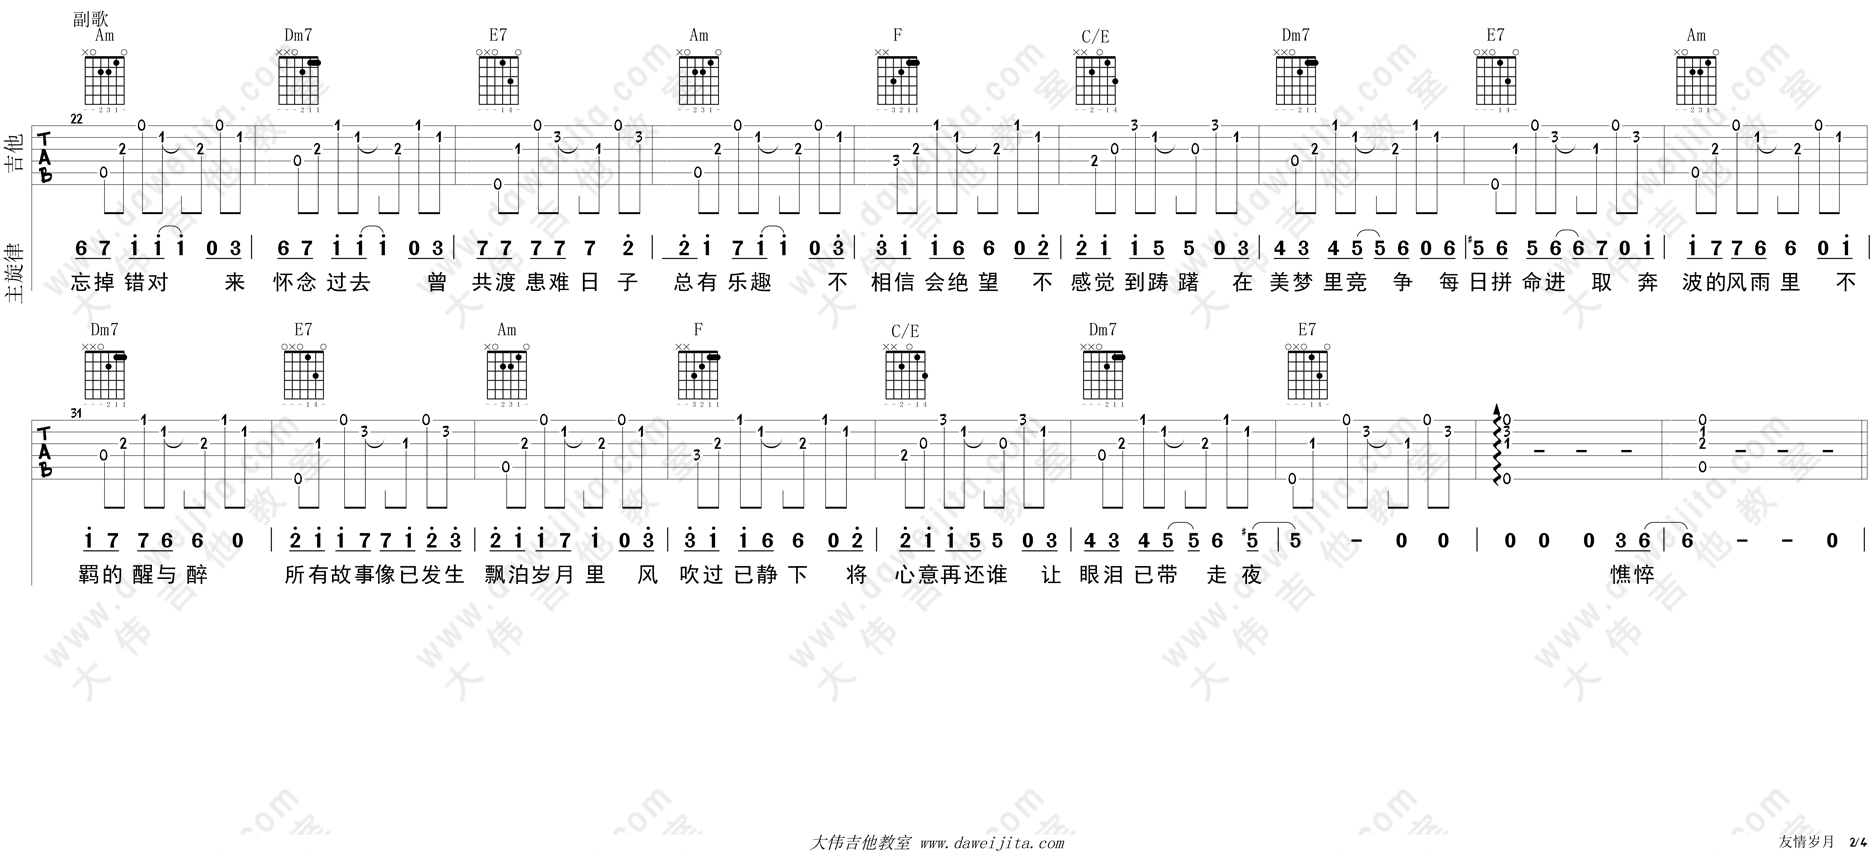 郑伊健《友情岁月》吉他谱(C调)-Guitar Music Score